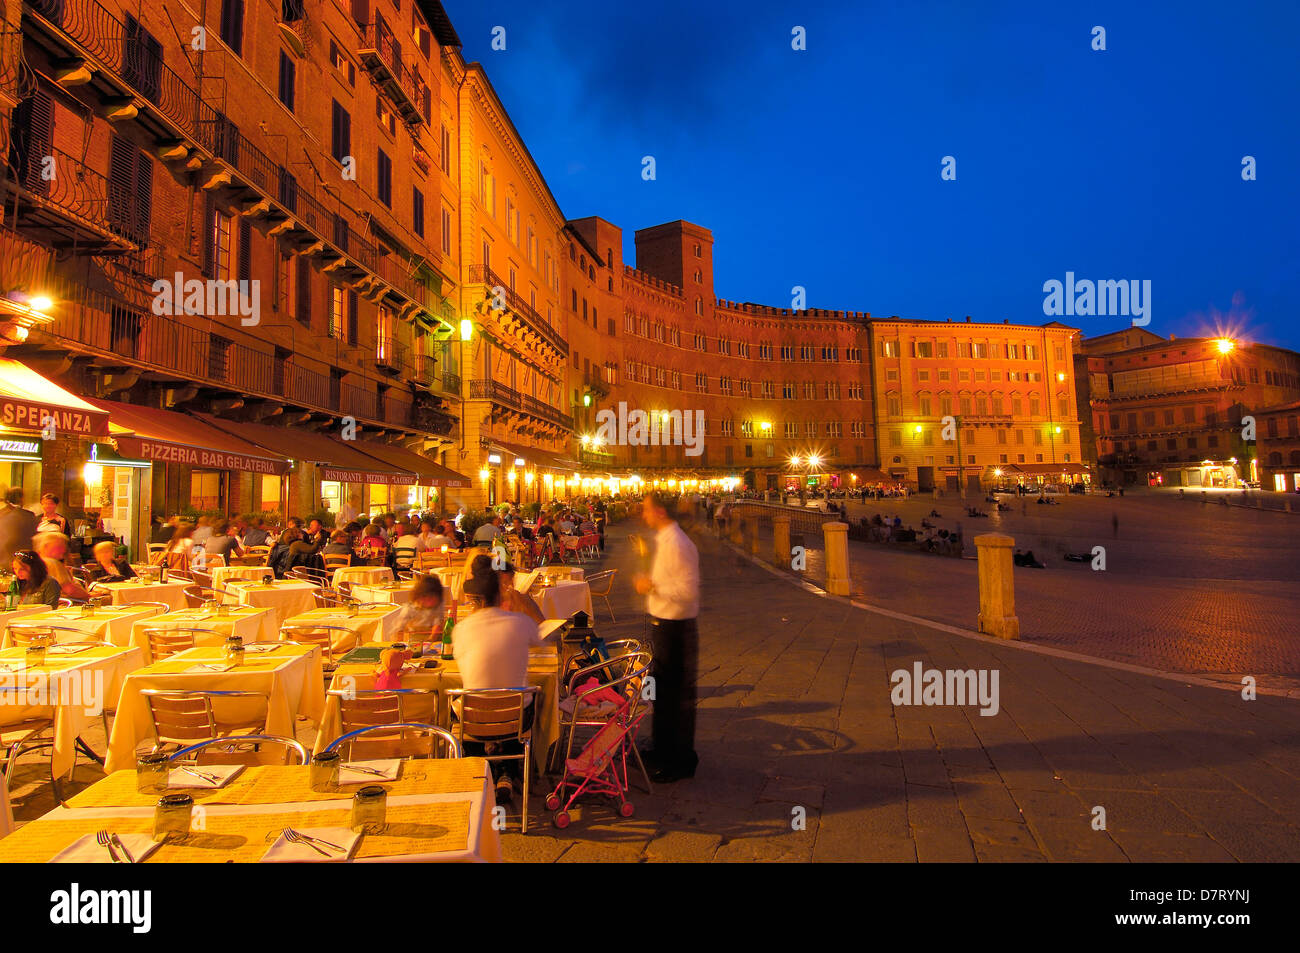 Siena, Piazza del campo at Dusk, The Campo Square at Dusk,Tuscany, Italy, Stock Photo